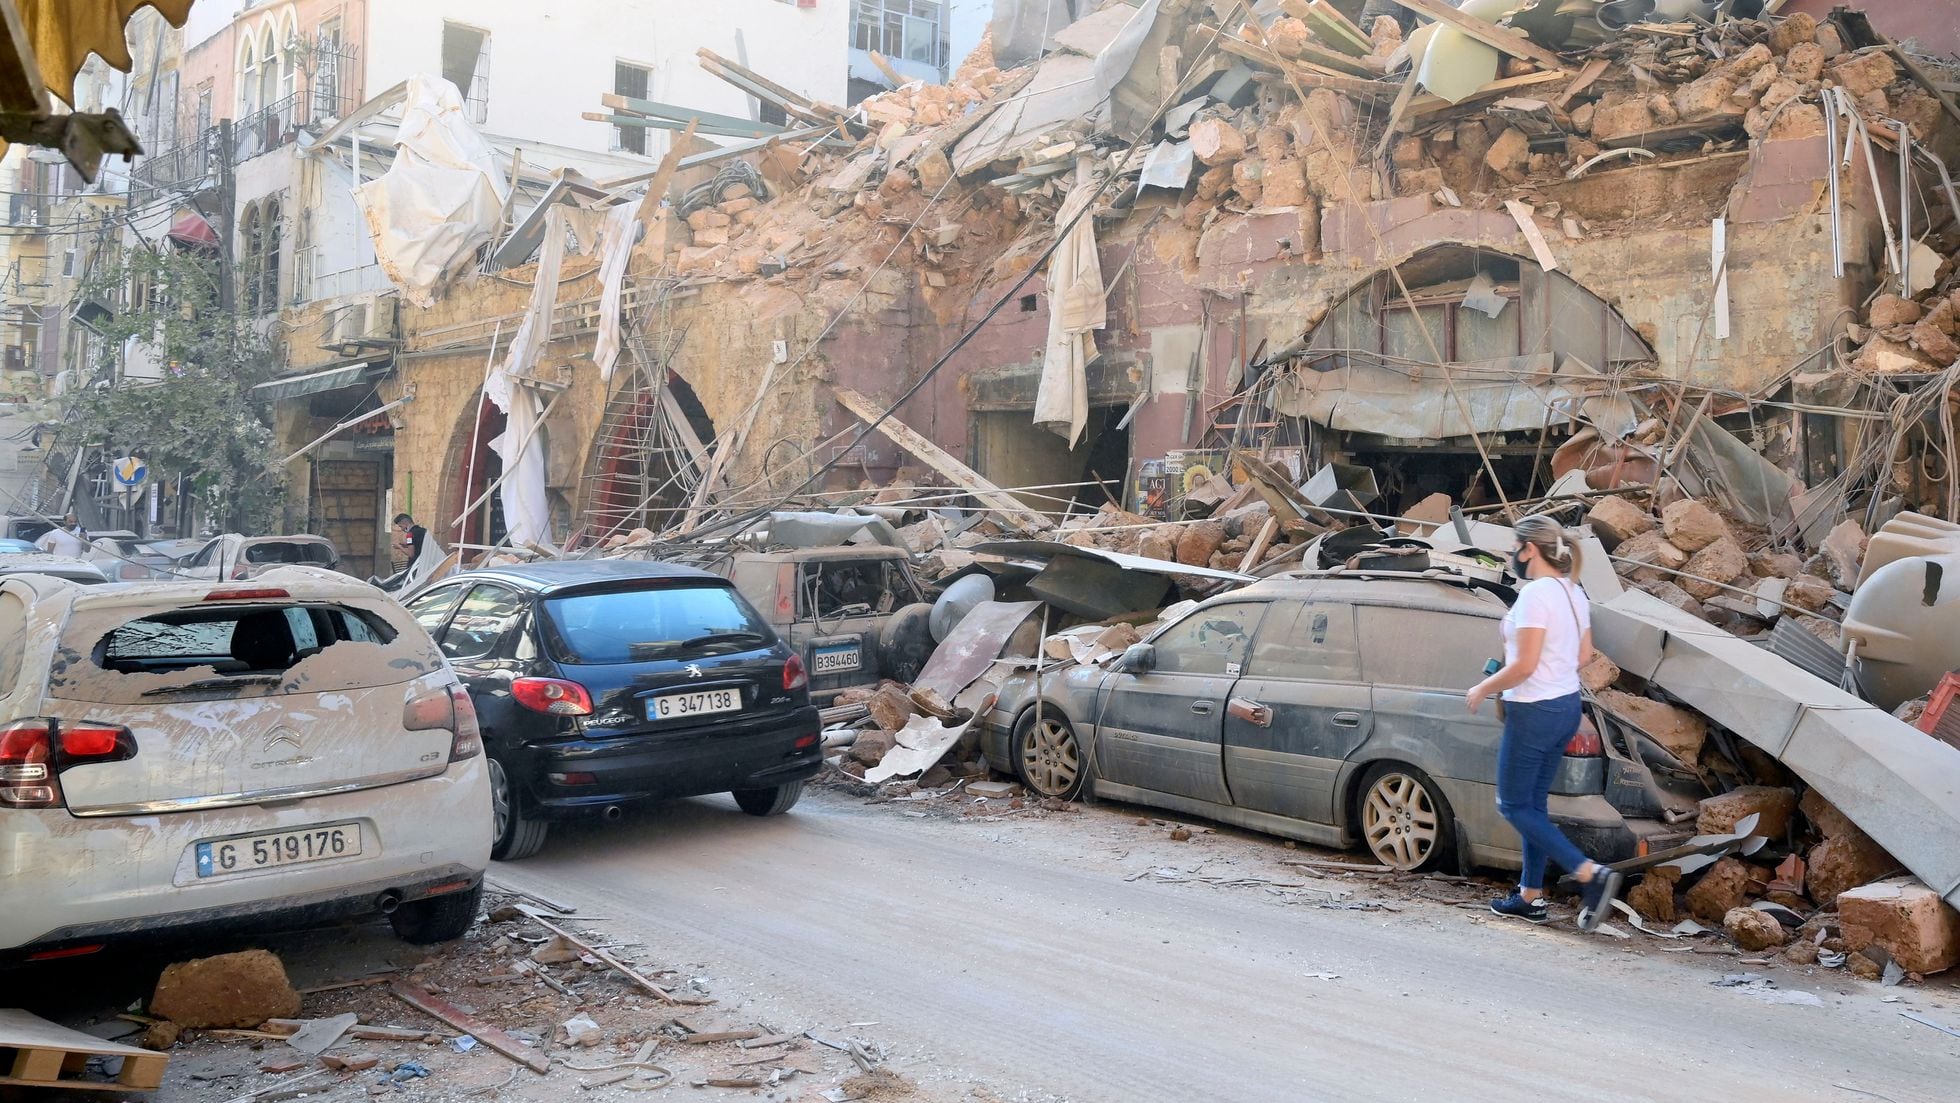 Последствия взрыва в Бейруте 4 августа 2020. Ливан Бейрут взрыв 4 августа 2020 года.